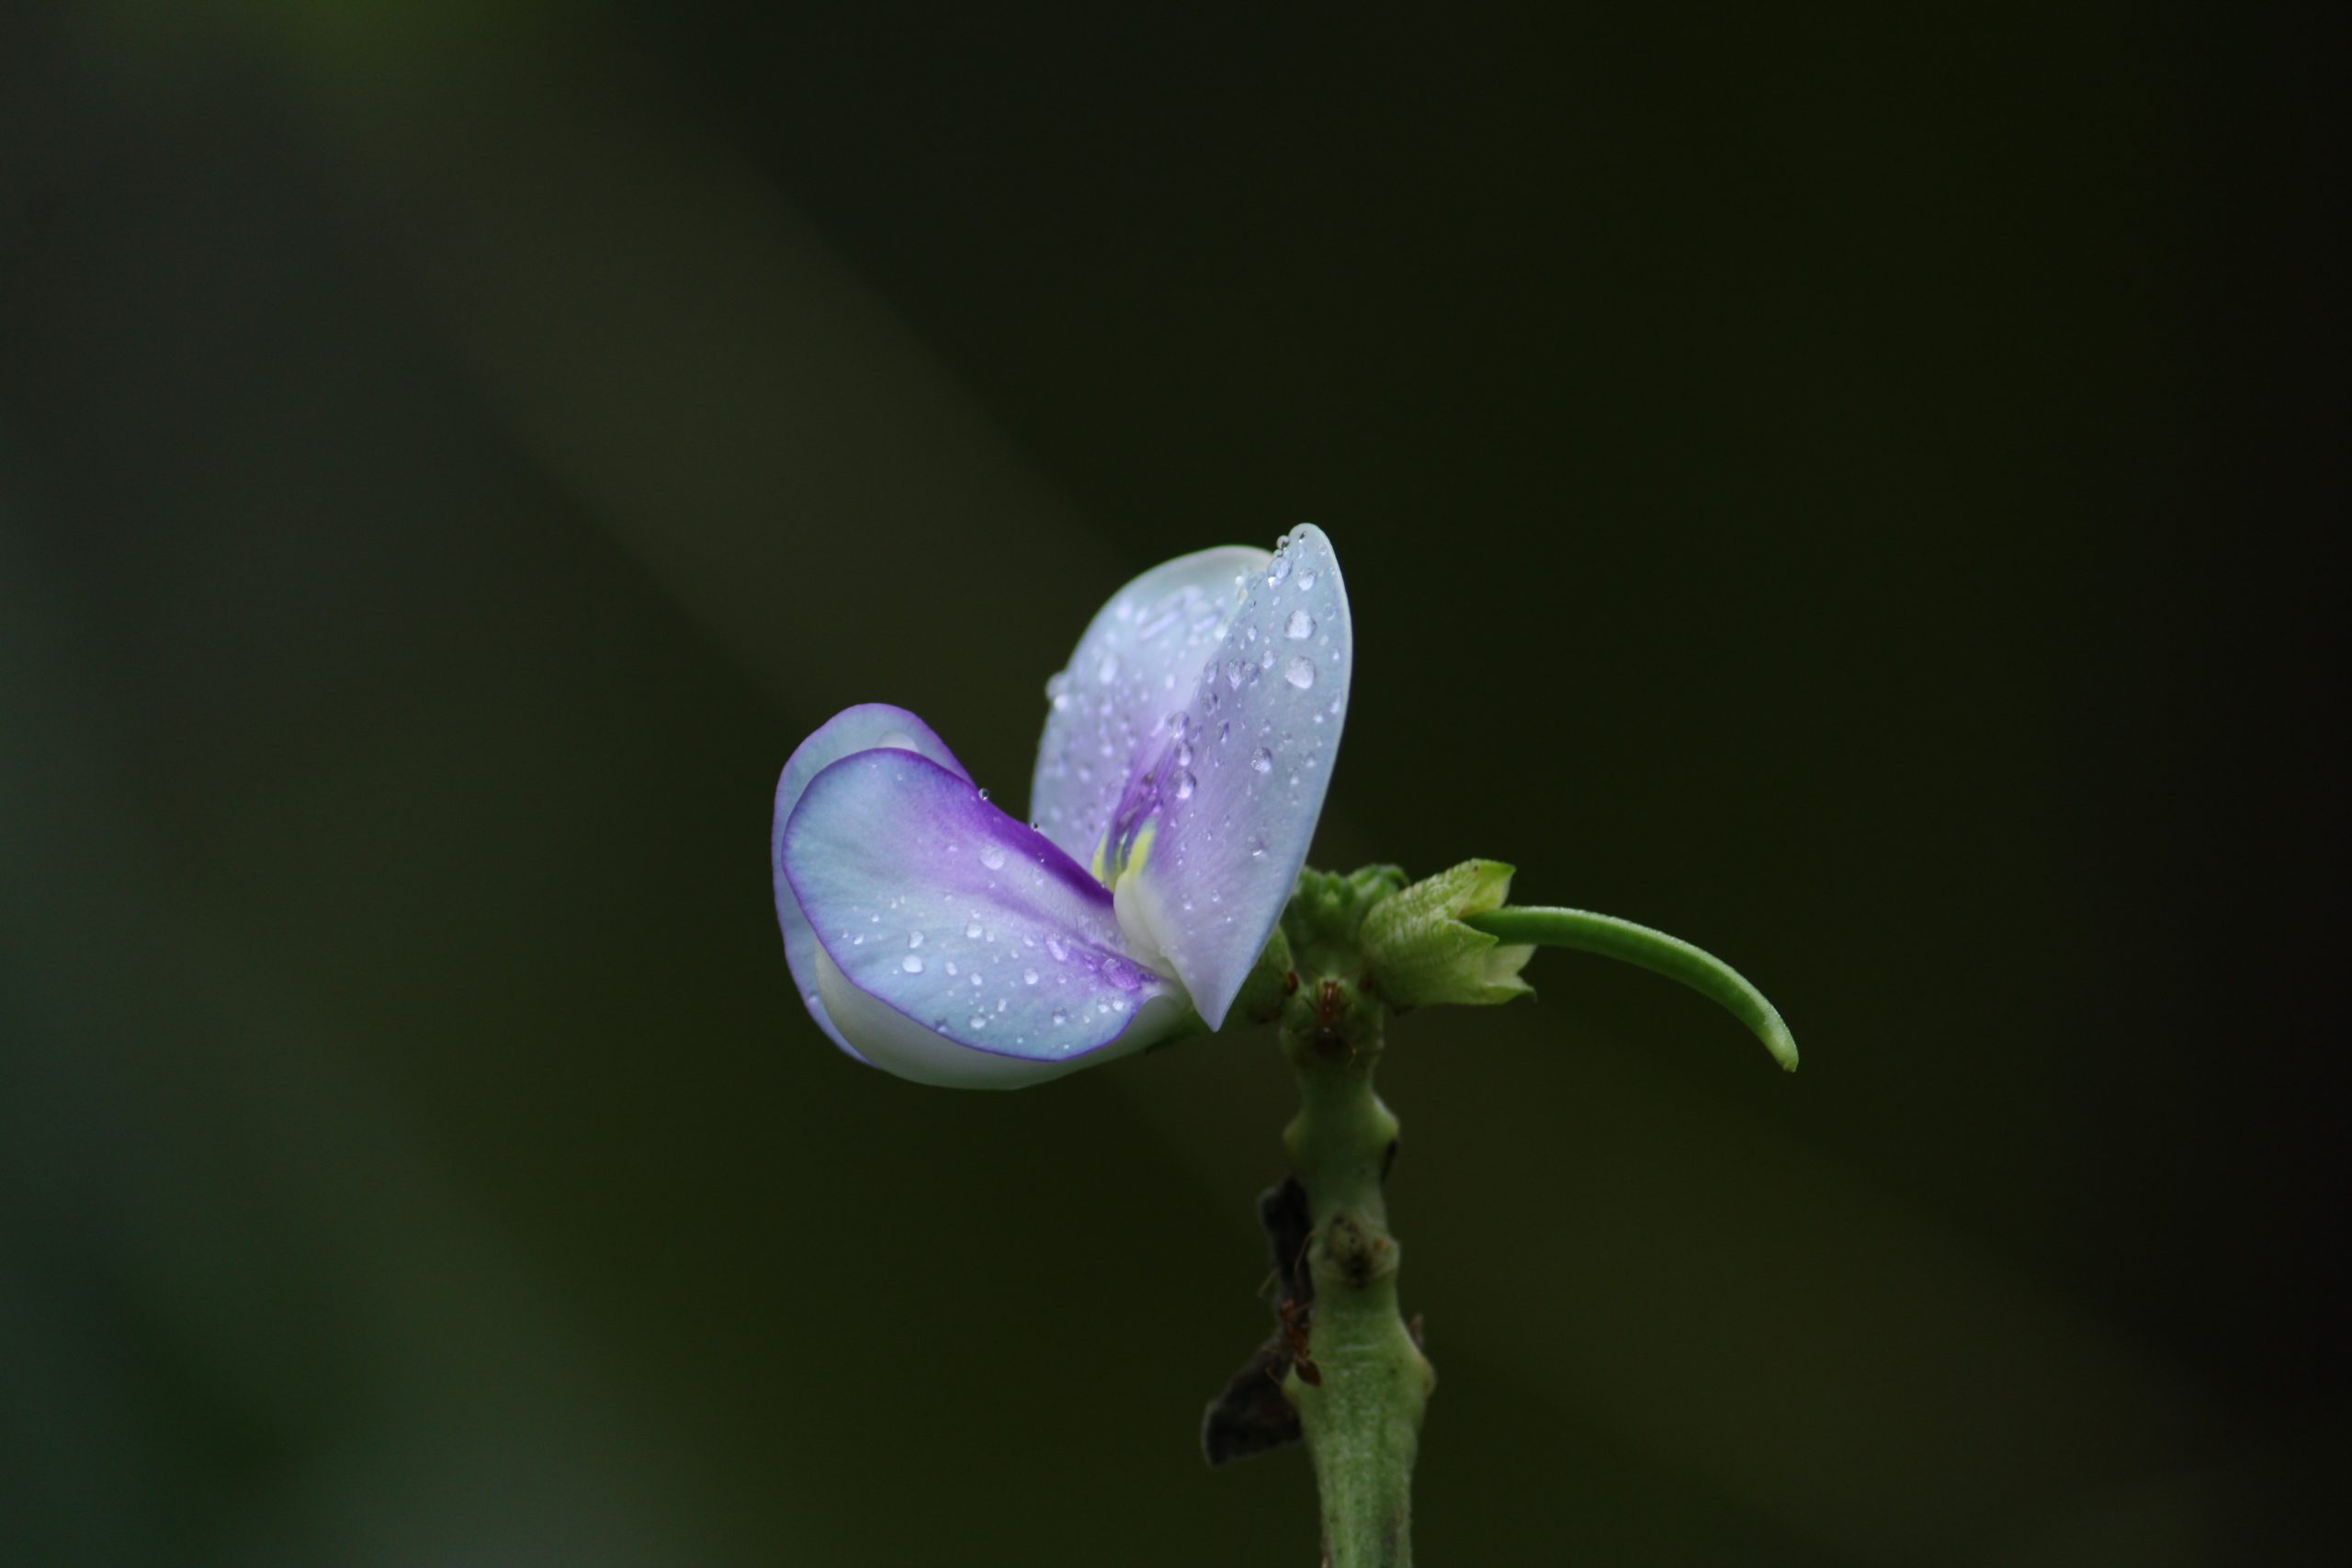 Violet Flower on Focus